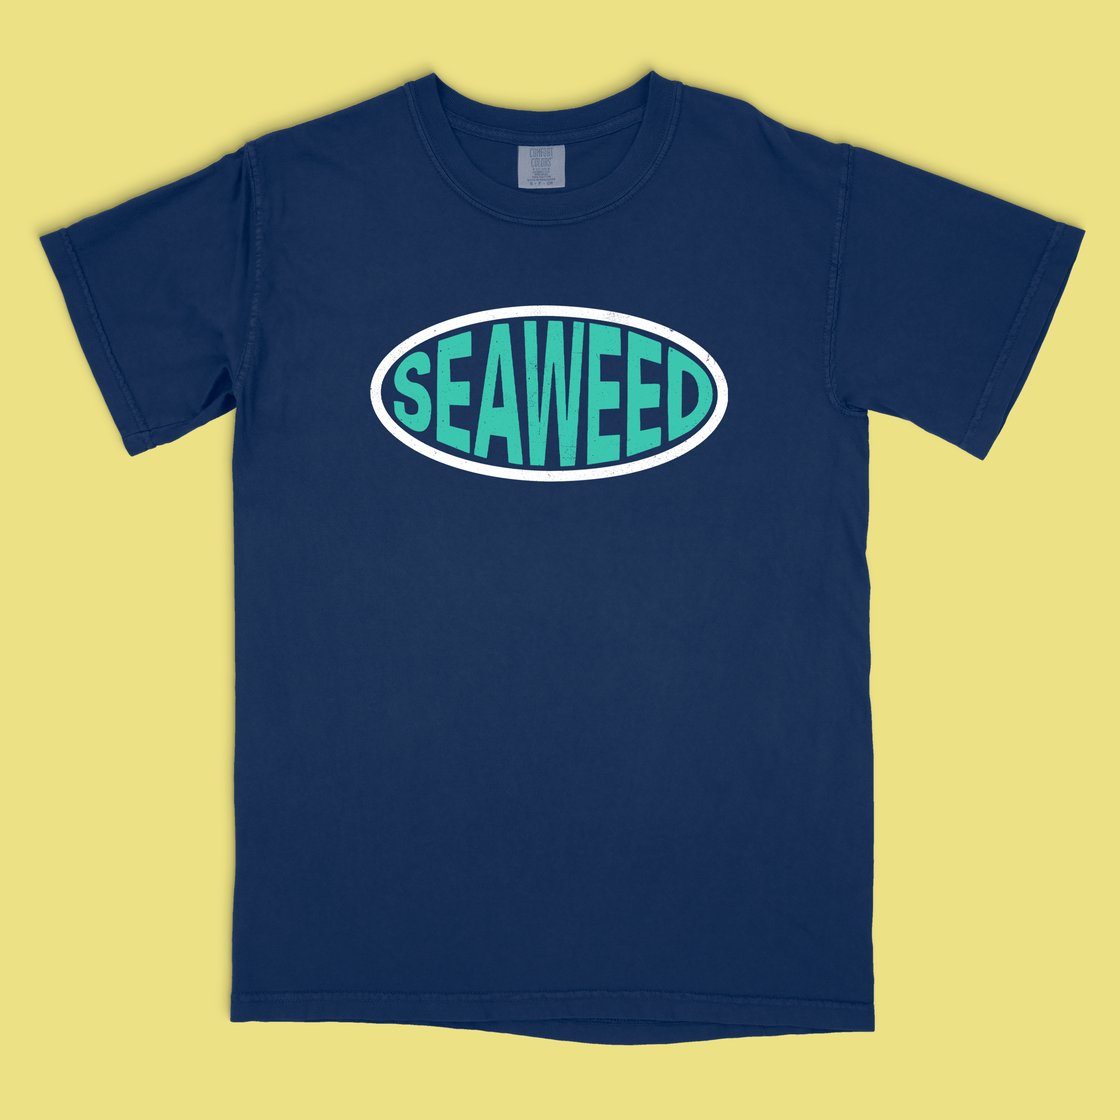 Image of Seaweed "Visualize Tacoma" T-shirt